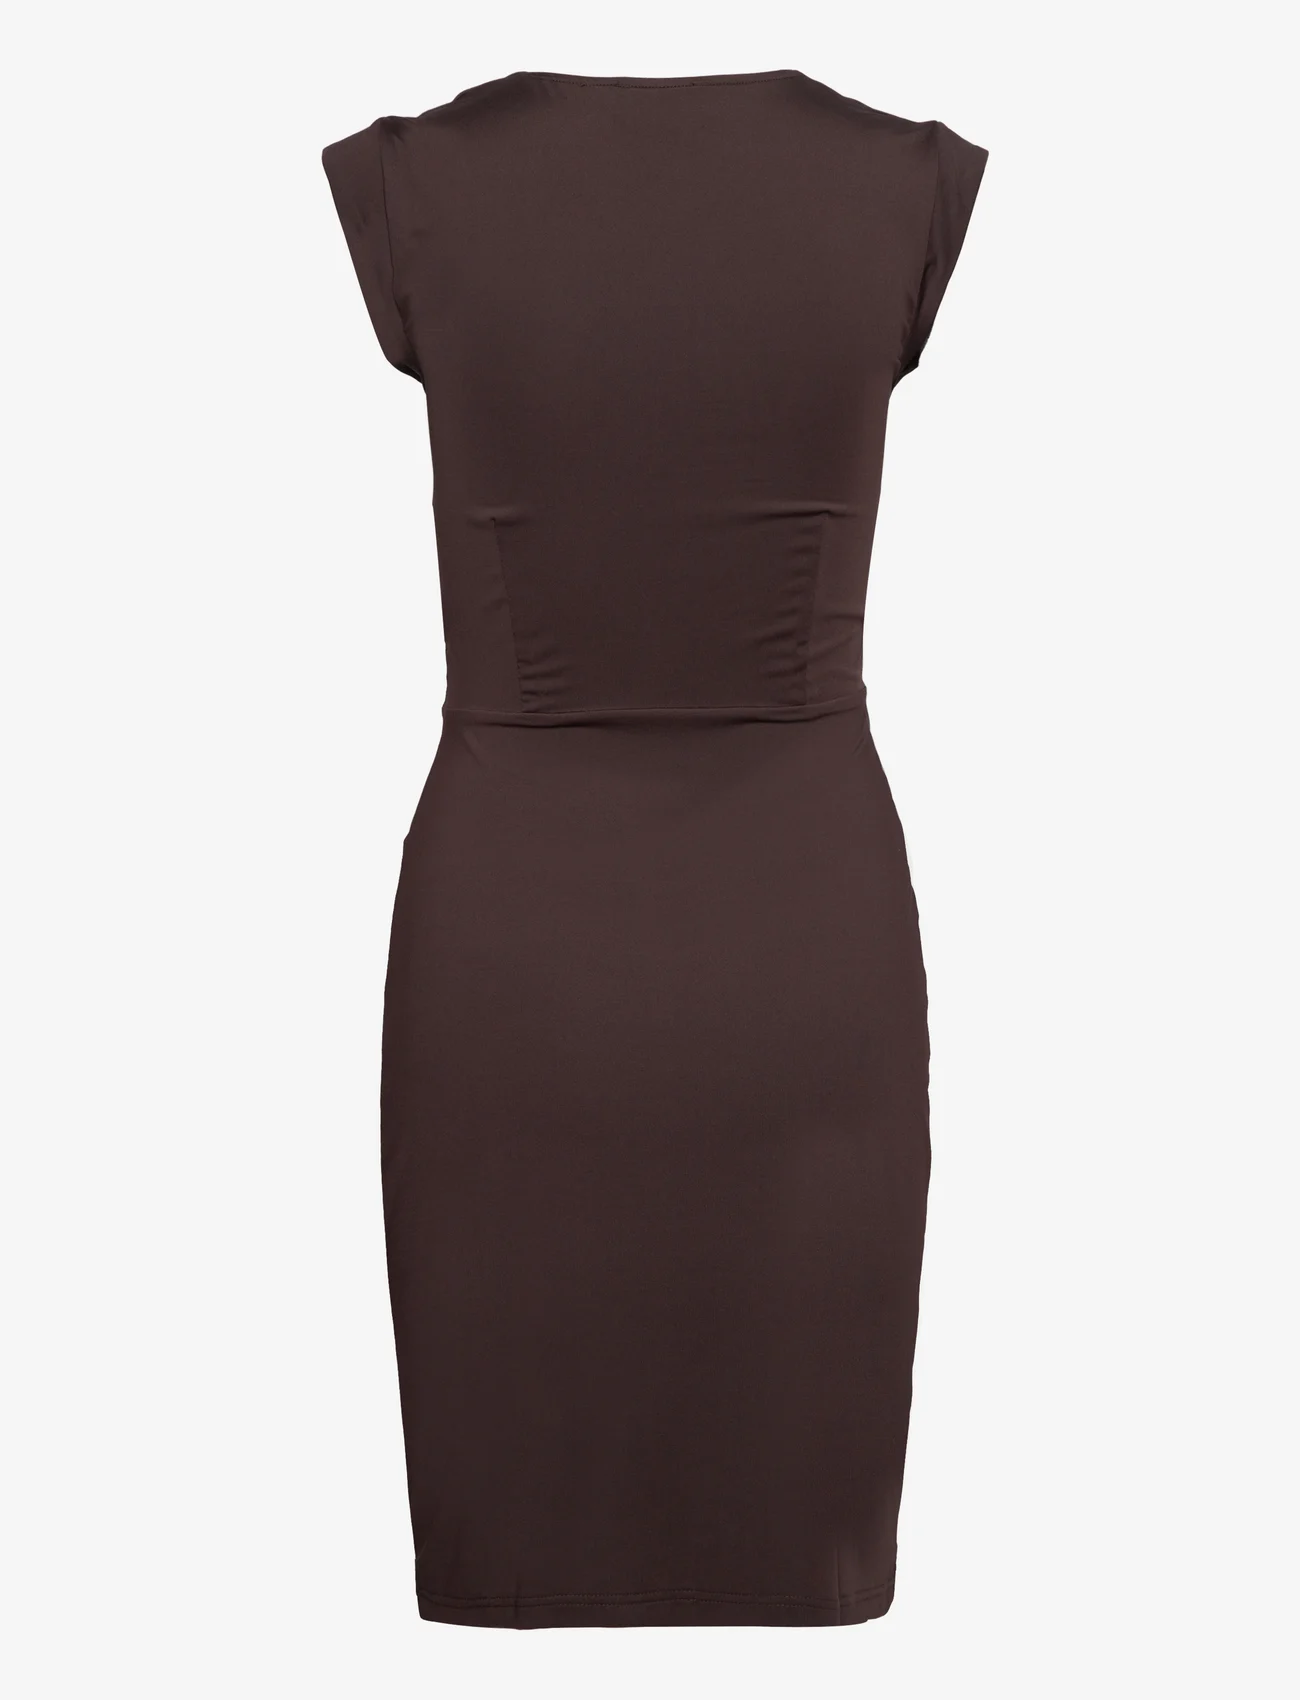 Rosemunde - Dress - odzież imprezowa w cenach outletowych - black brown - 1